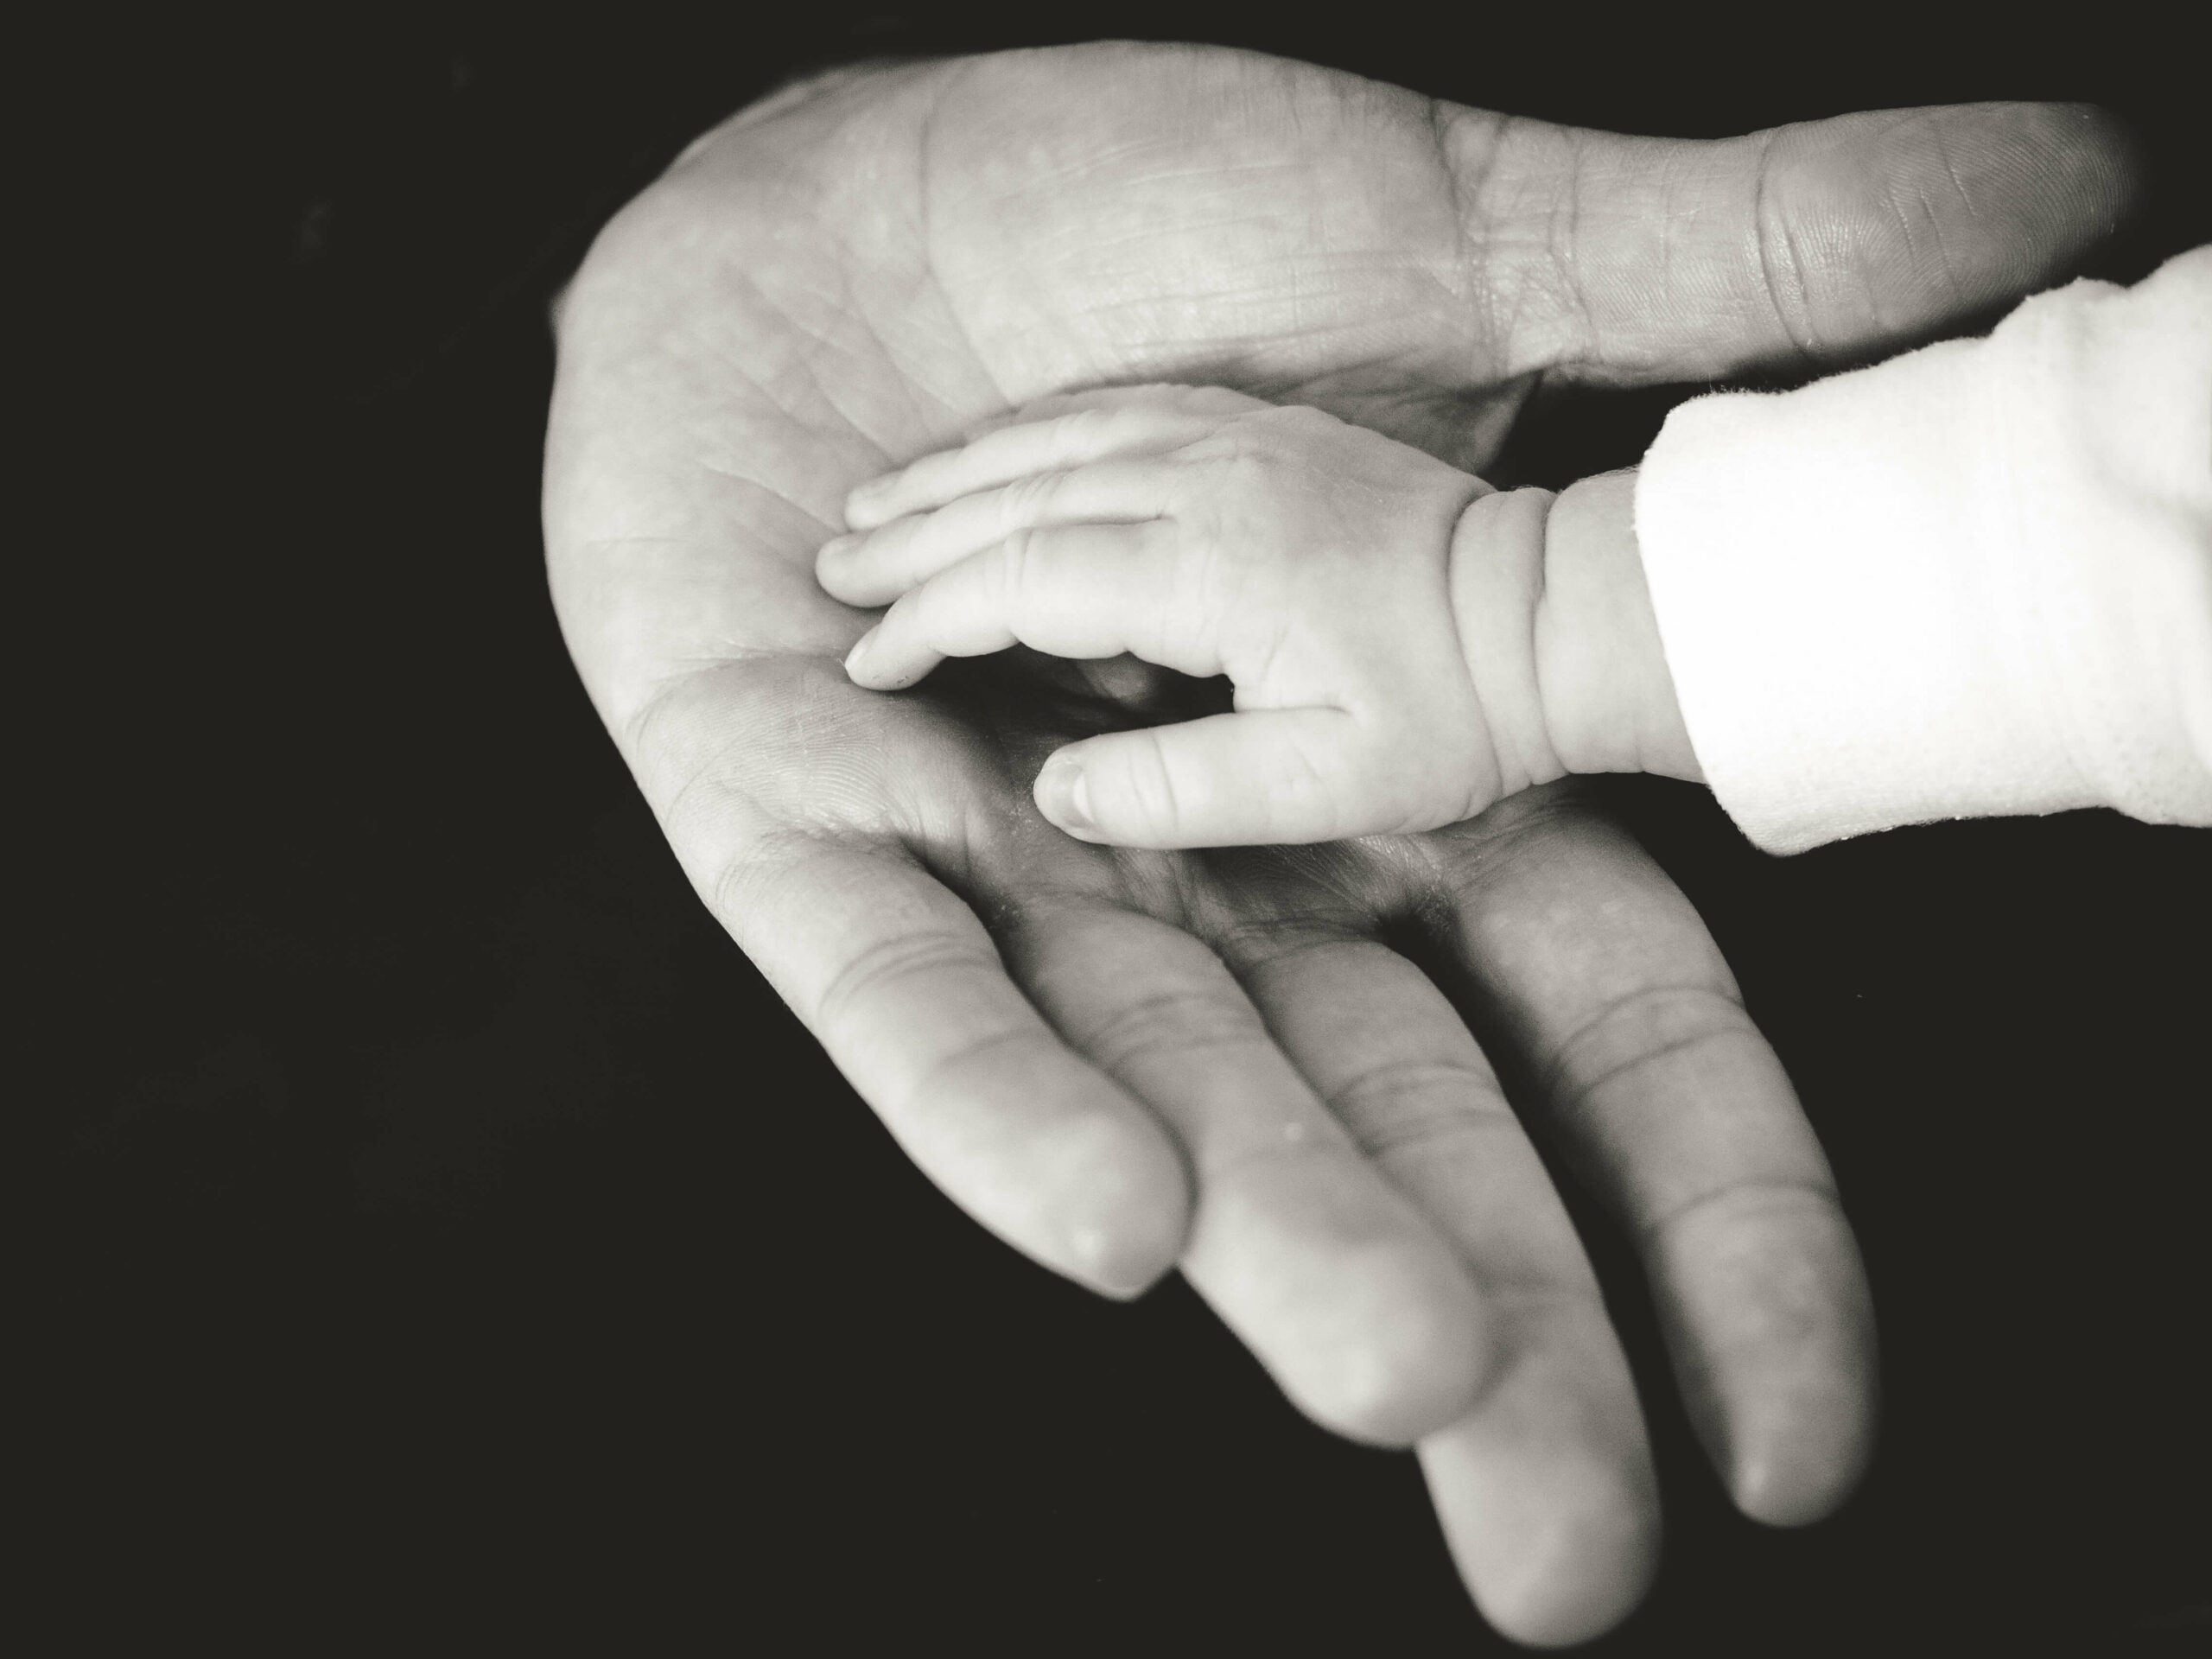 Une main de bébé dans une main d'adulte en noir et blanc